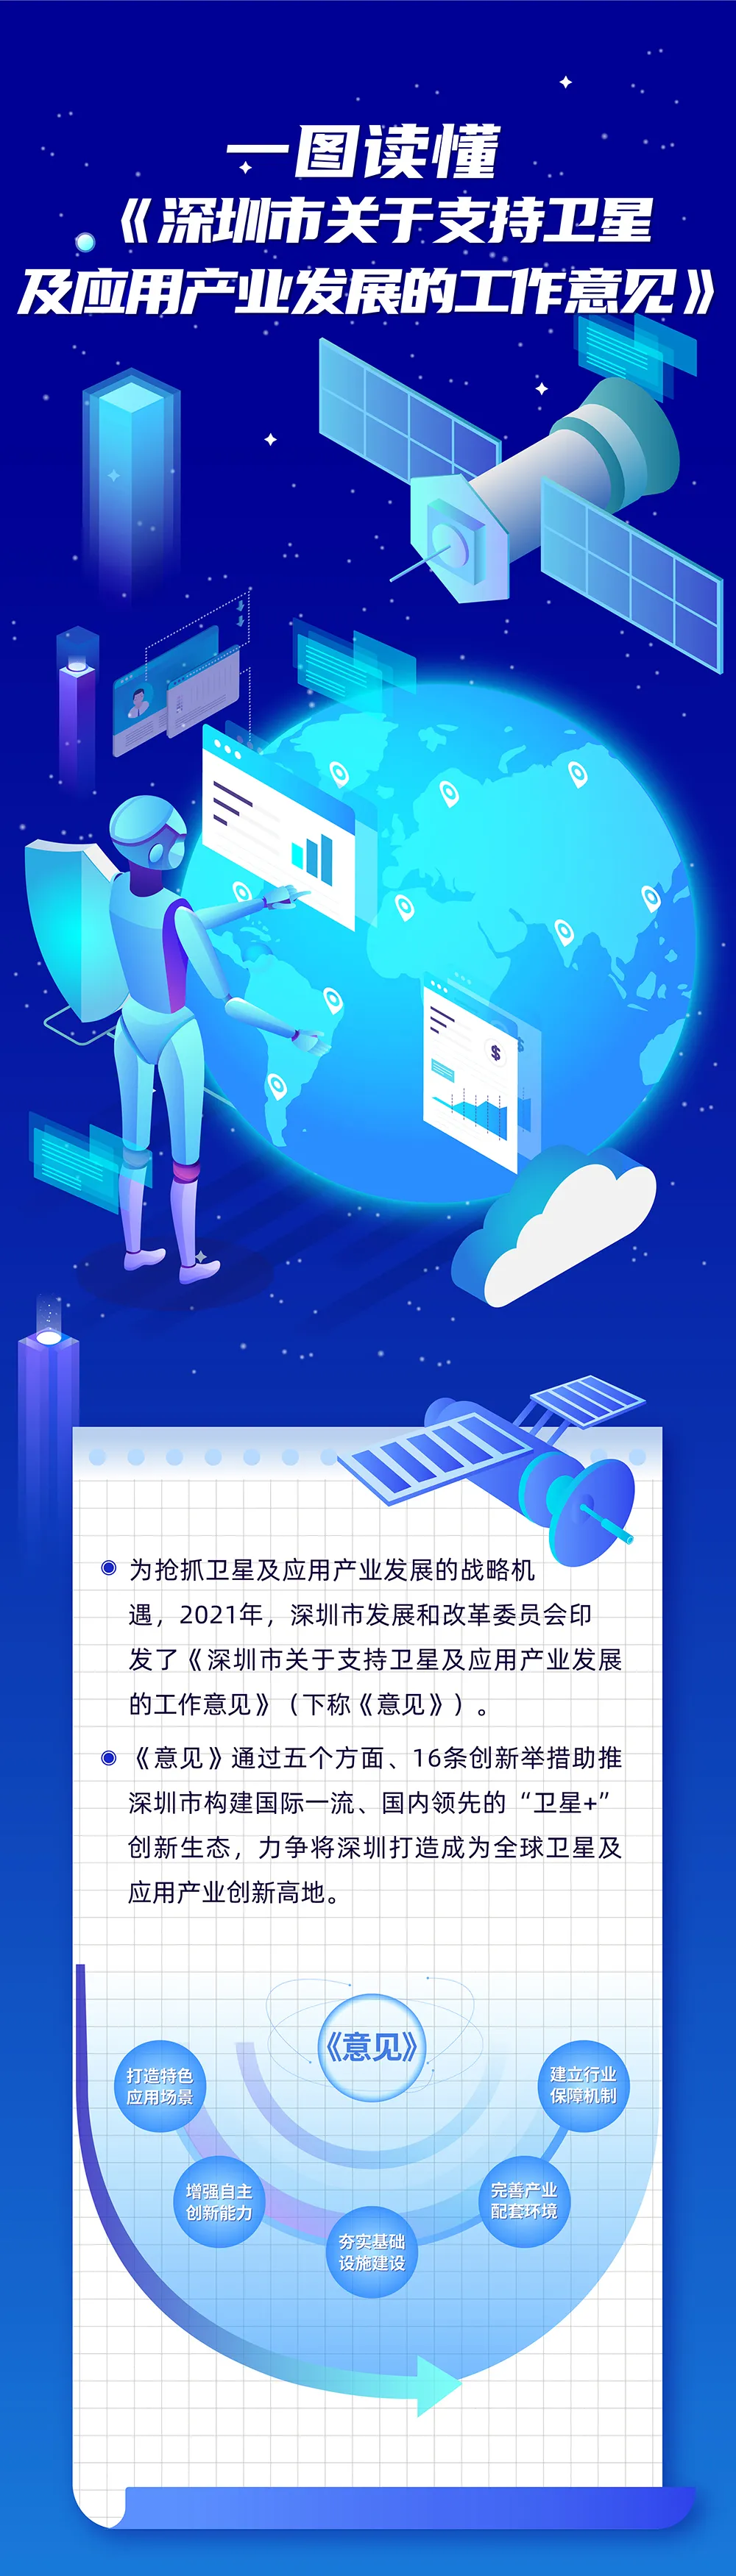 深圳努力打造全球卫星及应用产业创新高地